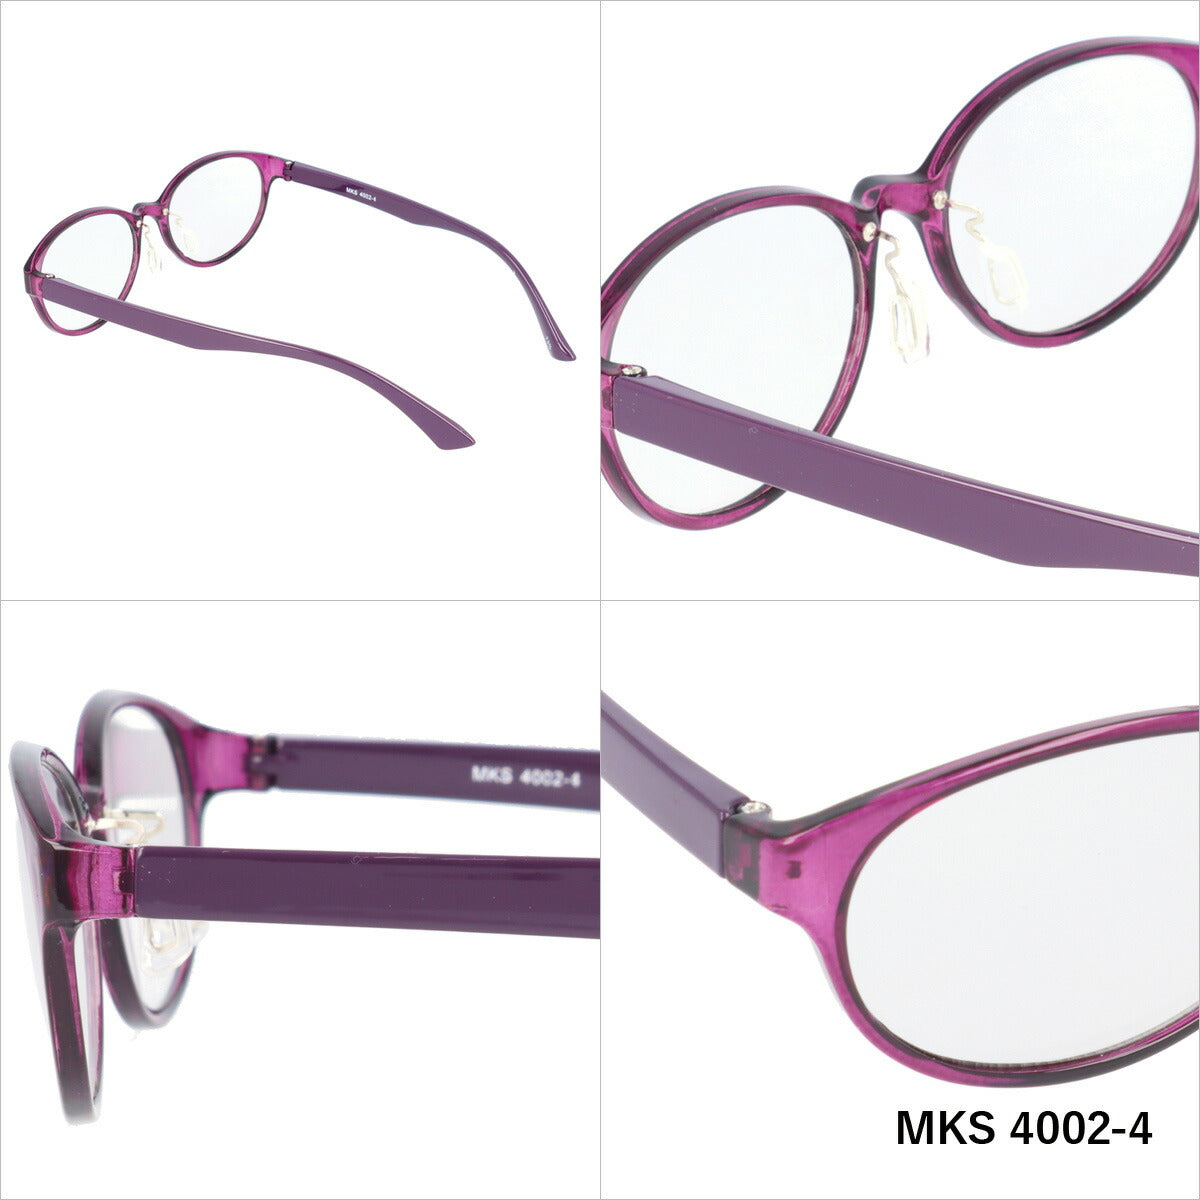 マシューキョウト サングラス mashu KYOTO MKS 4002 全6カラー 51サイズ オーバル型 ユニセックス メンズ レディース UVカット 紫外線 カラーサングラス ブランド 人気 定番 ラッピング無料